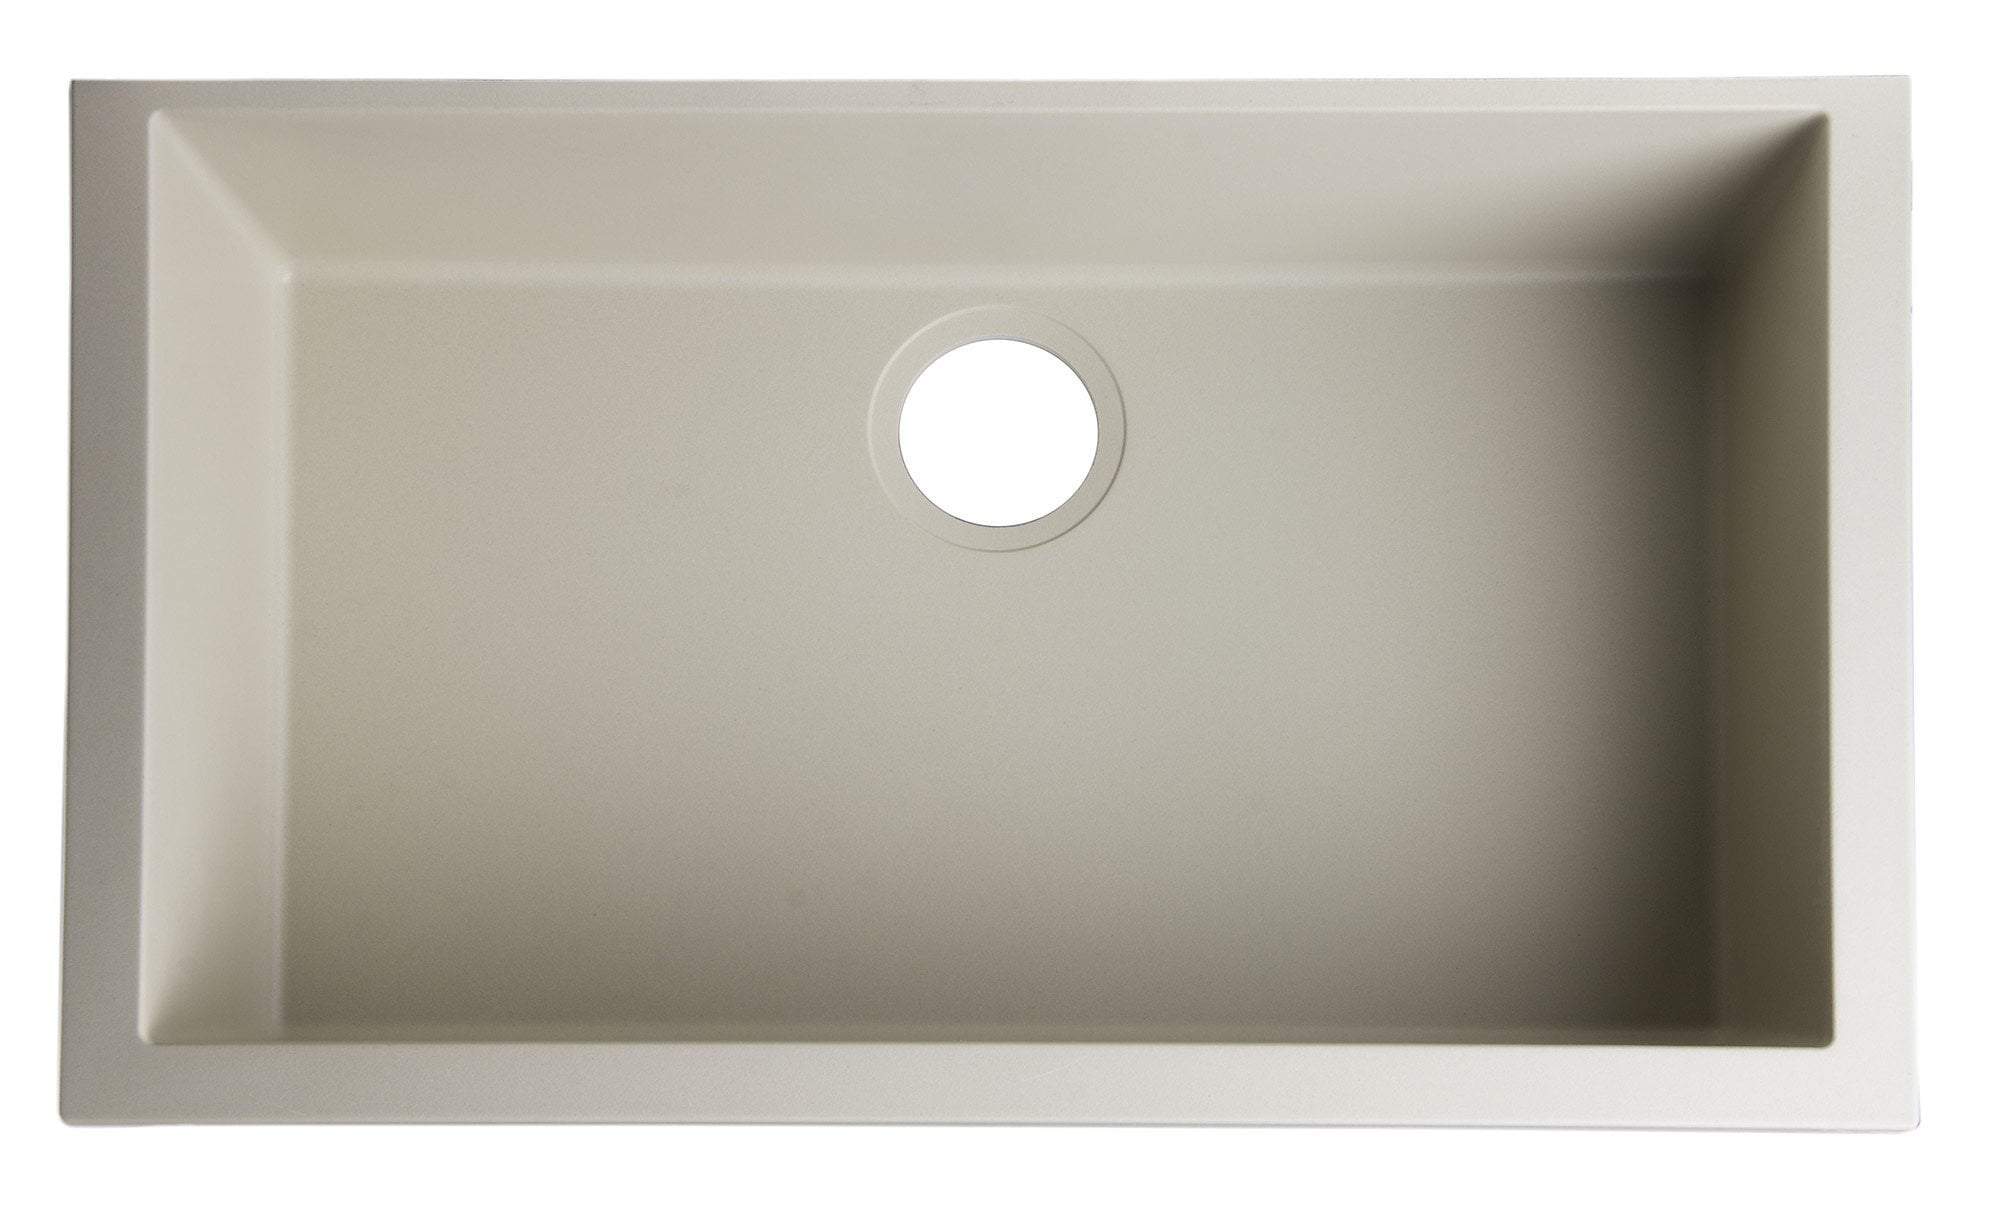 Biscuit 30" Undermount Single Bowl Granite Composite Kitchen Sink